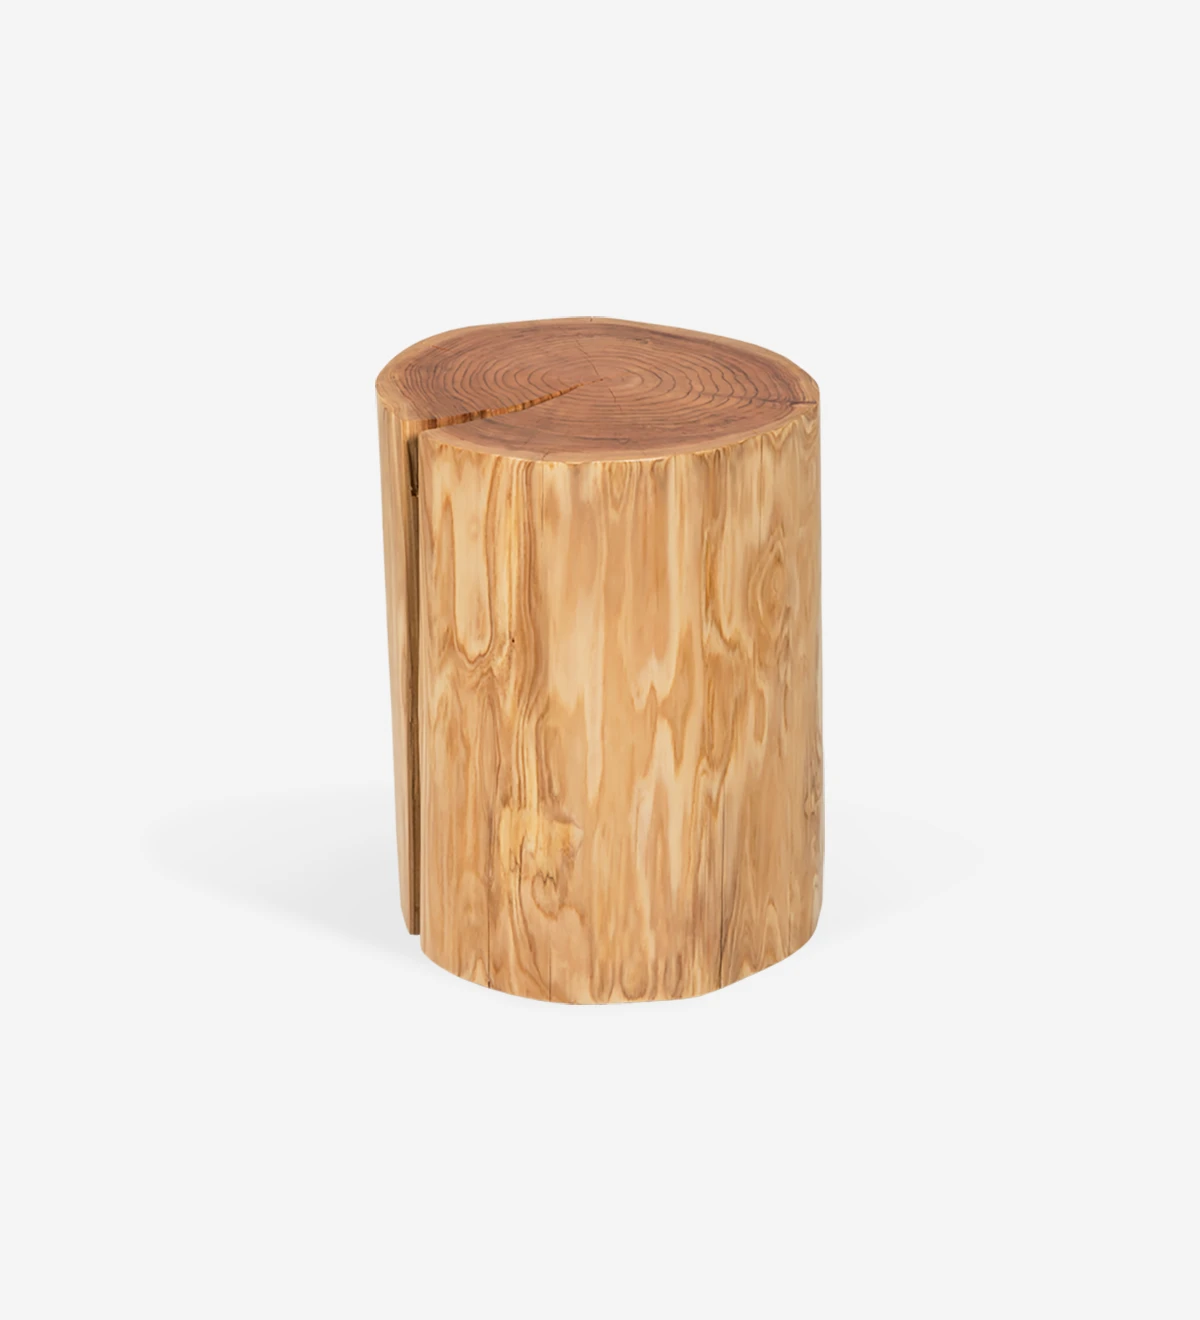 Mesa de apoio tronco em madeira natural de criptoméria.